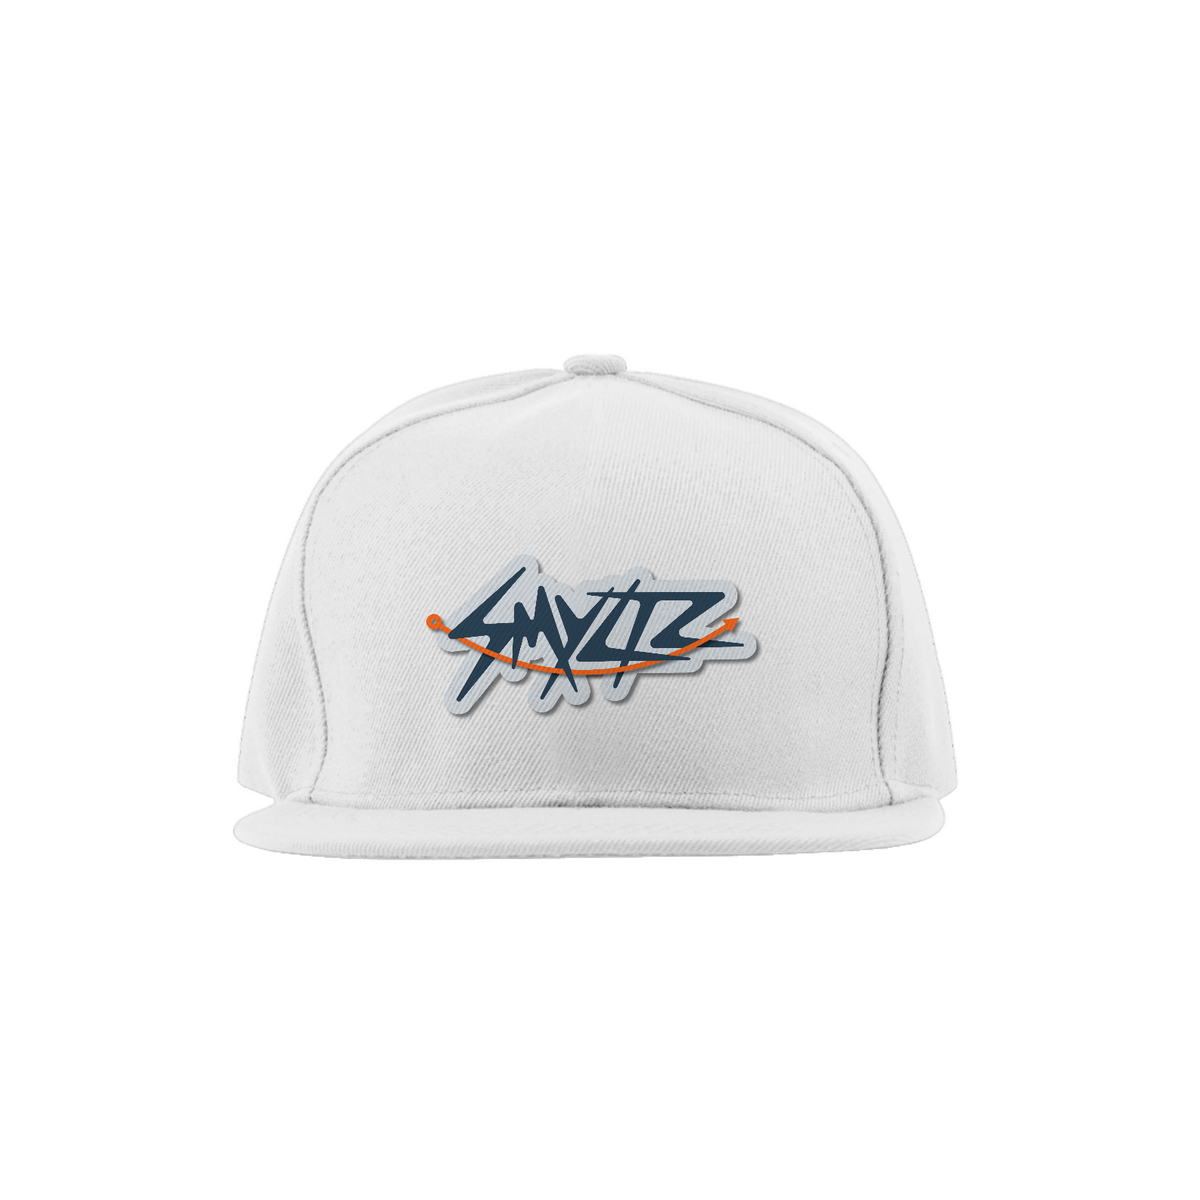 Nome do produto: Smyltz – Boné Quality 011